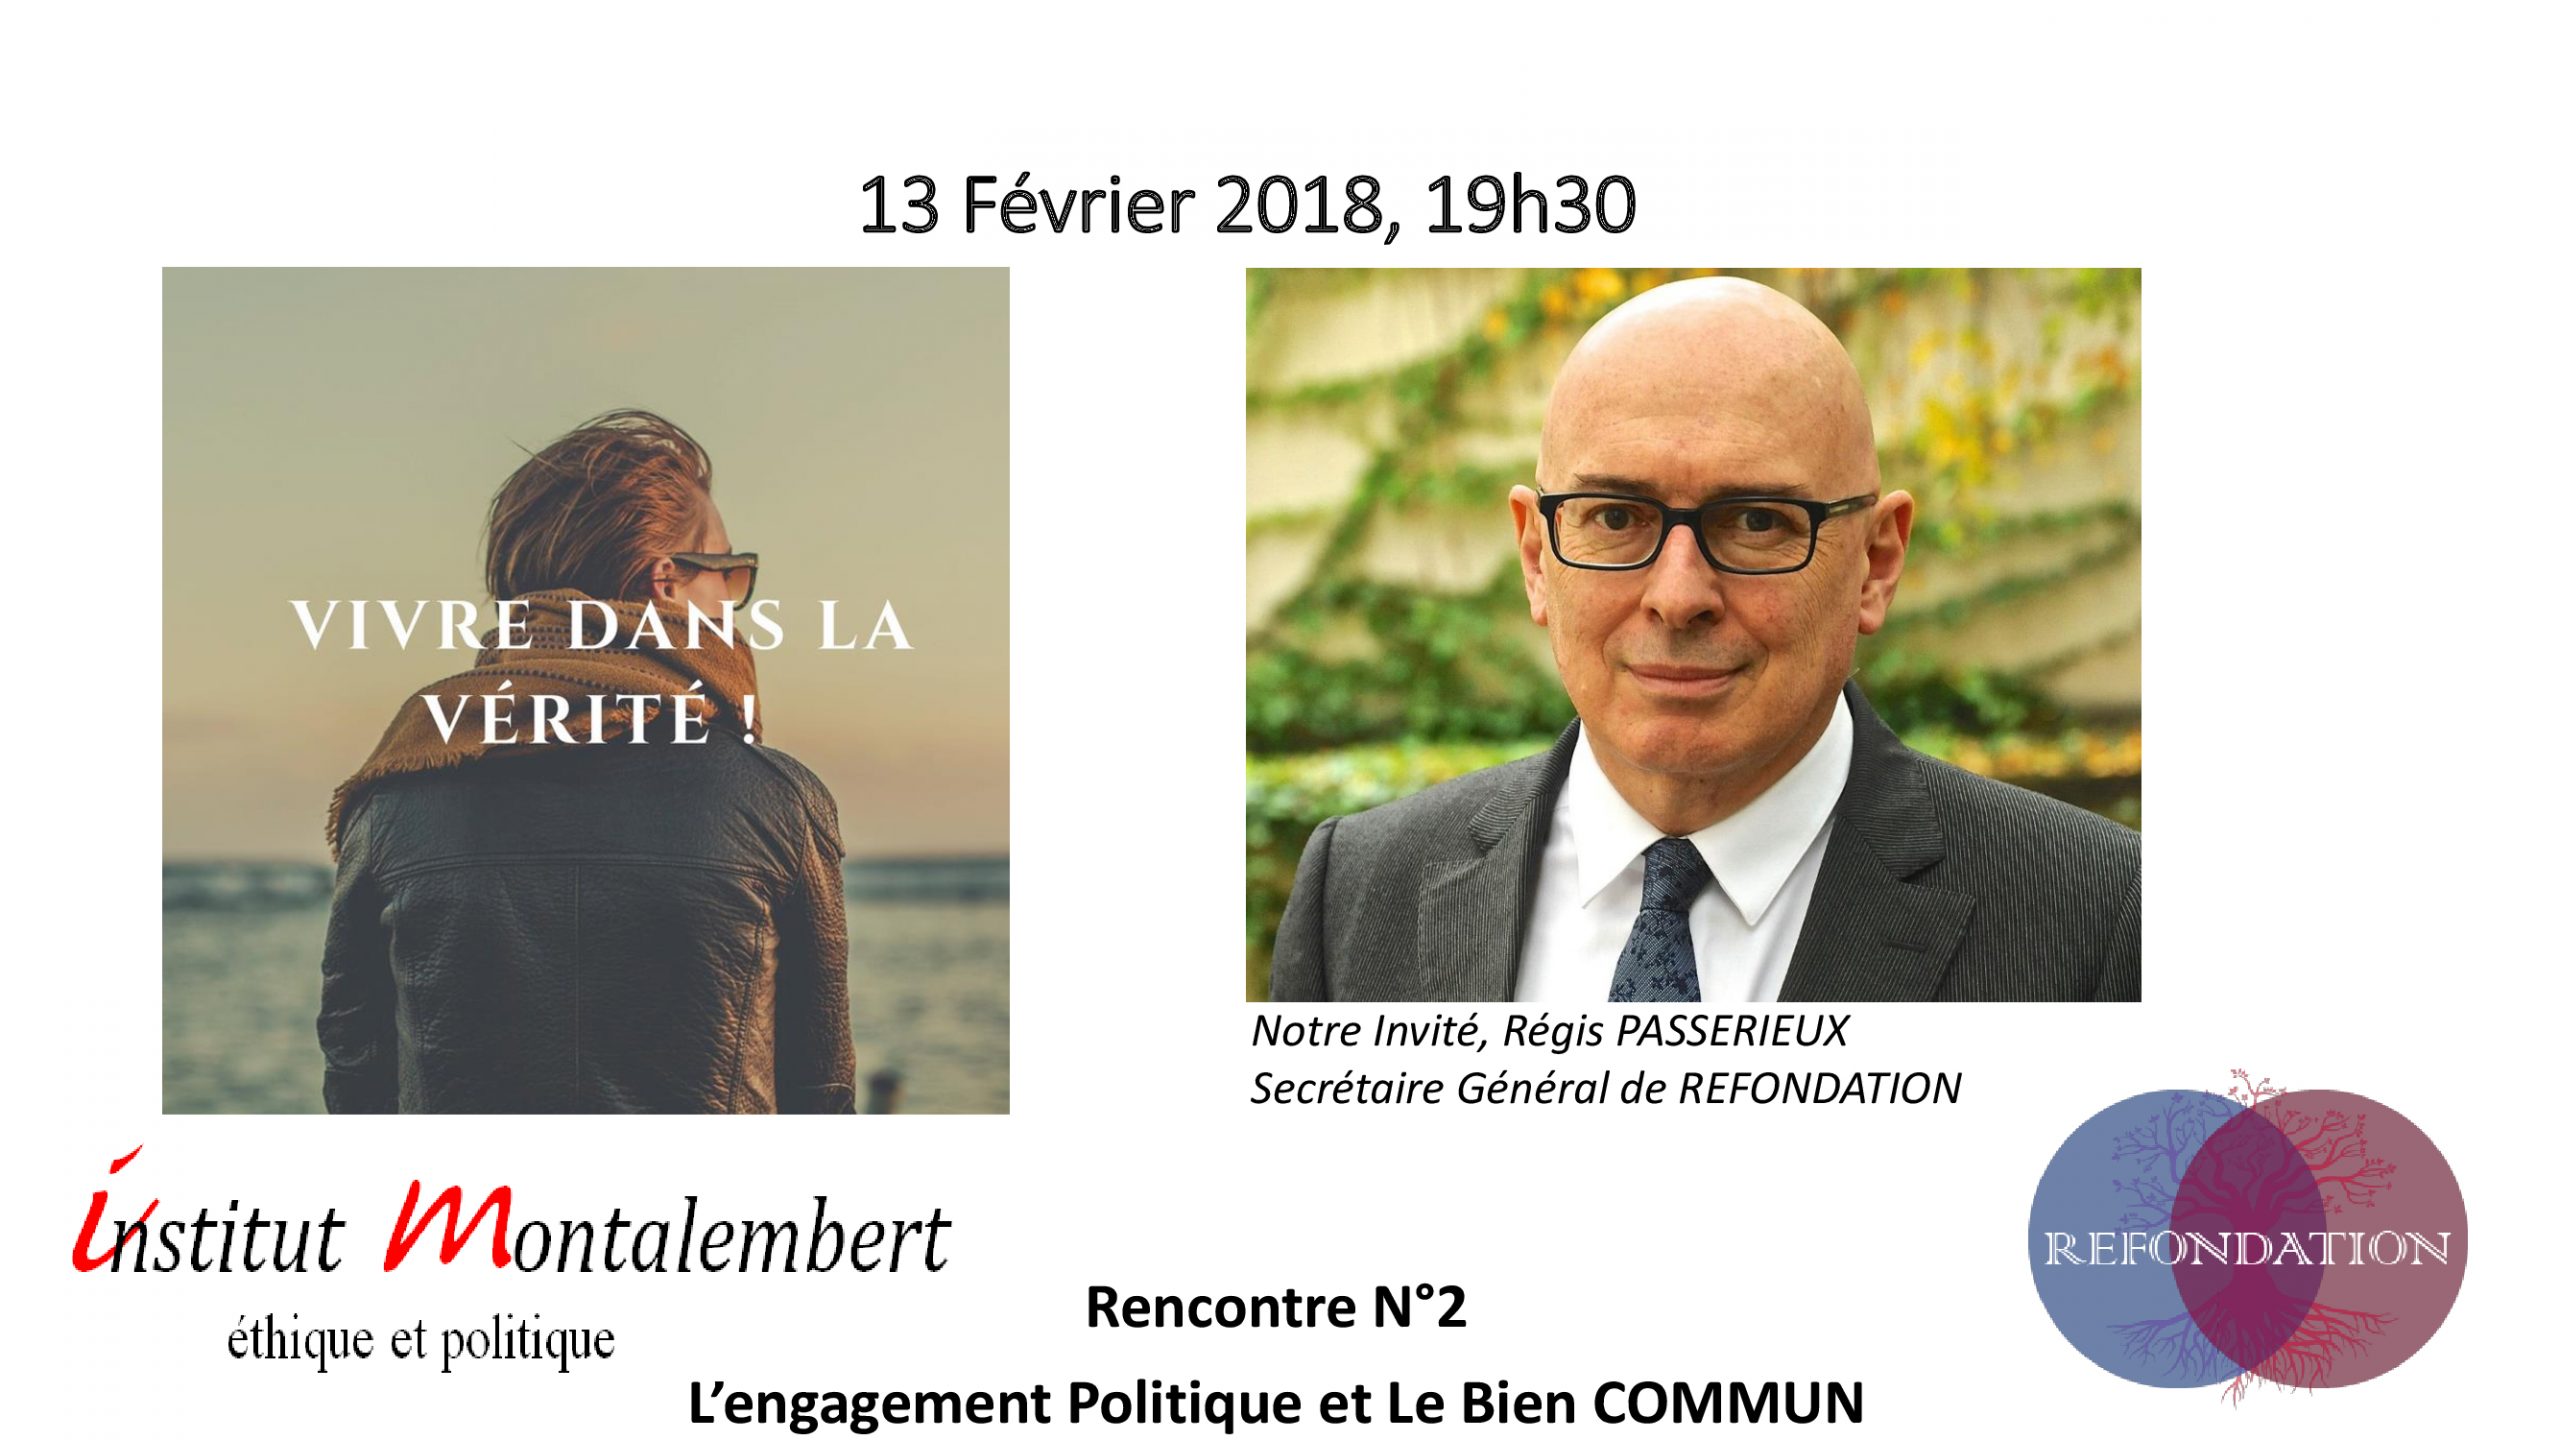 2e Rencontre de l’Institut Montalembert le 13 février 2018 à Paris